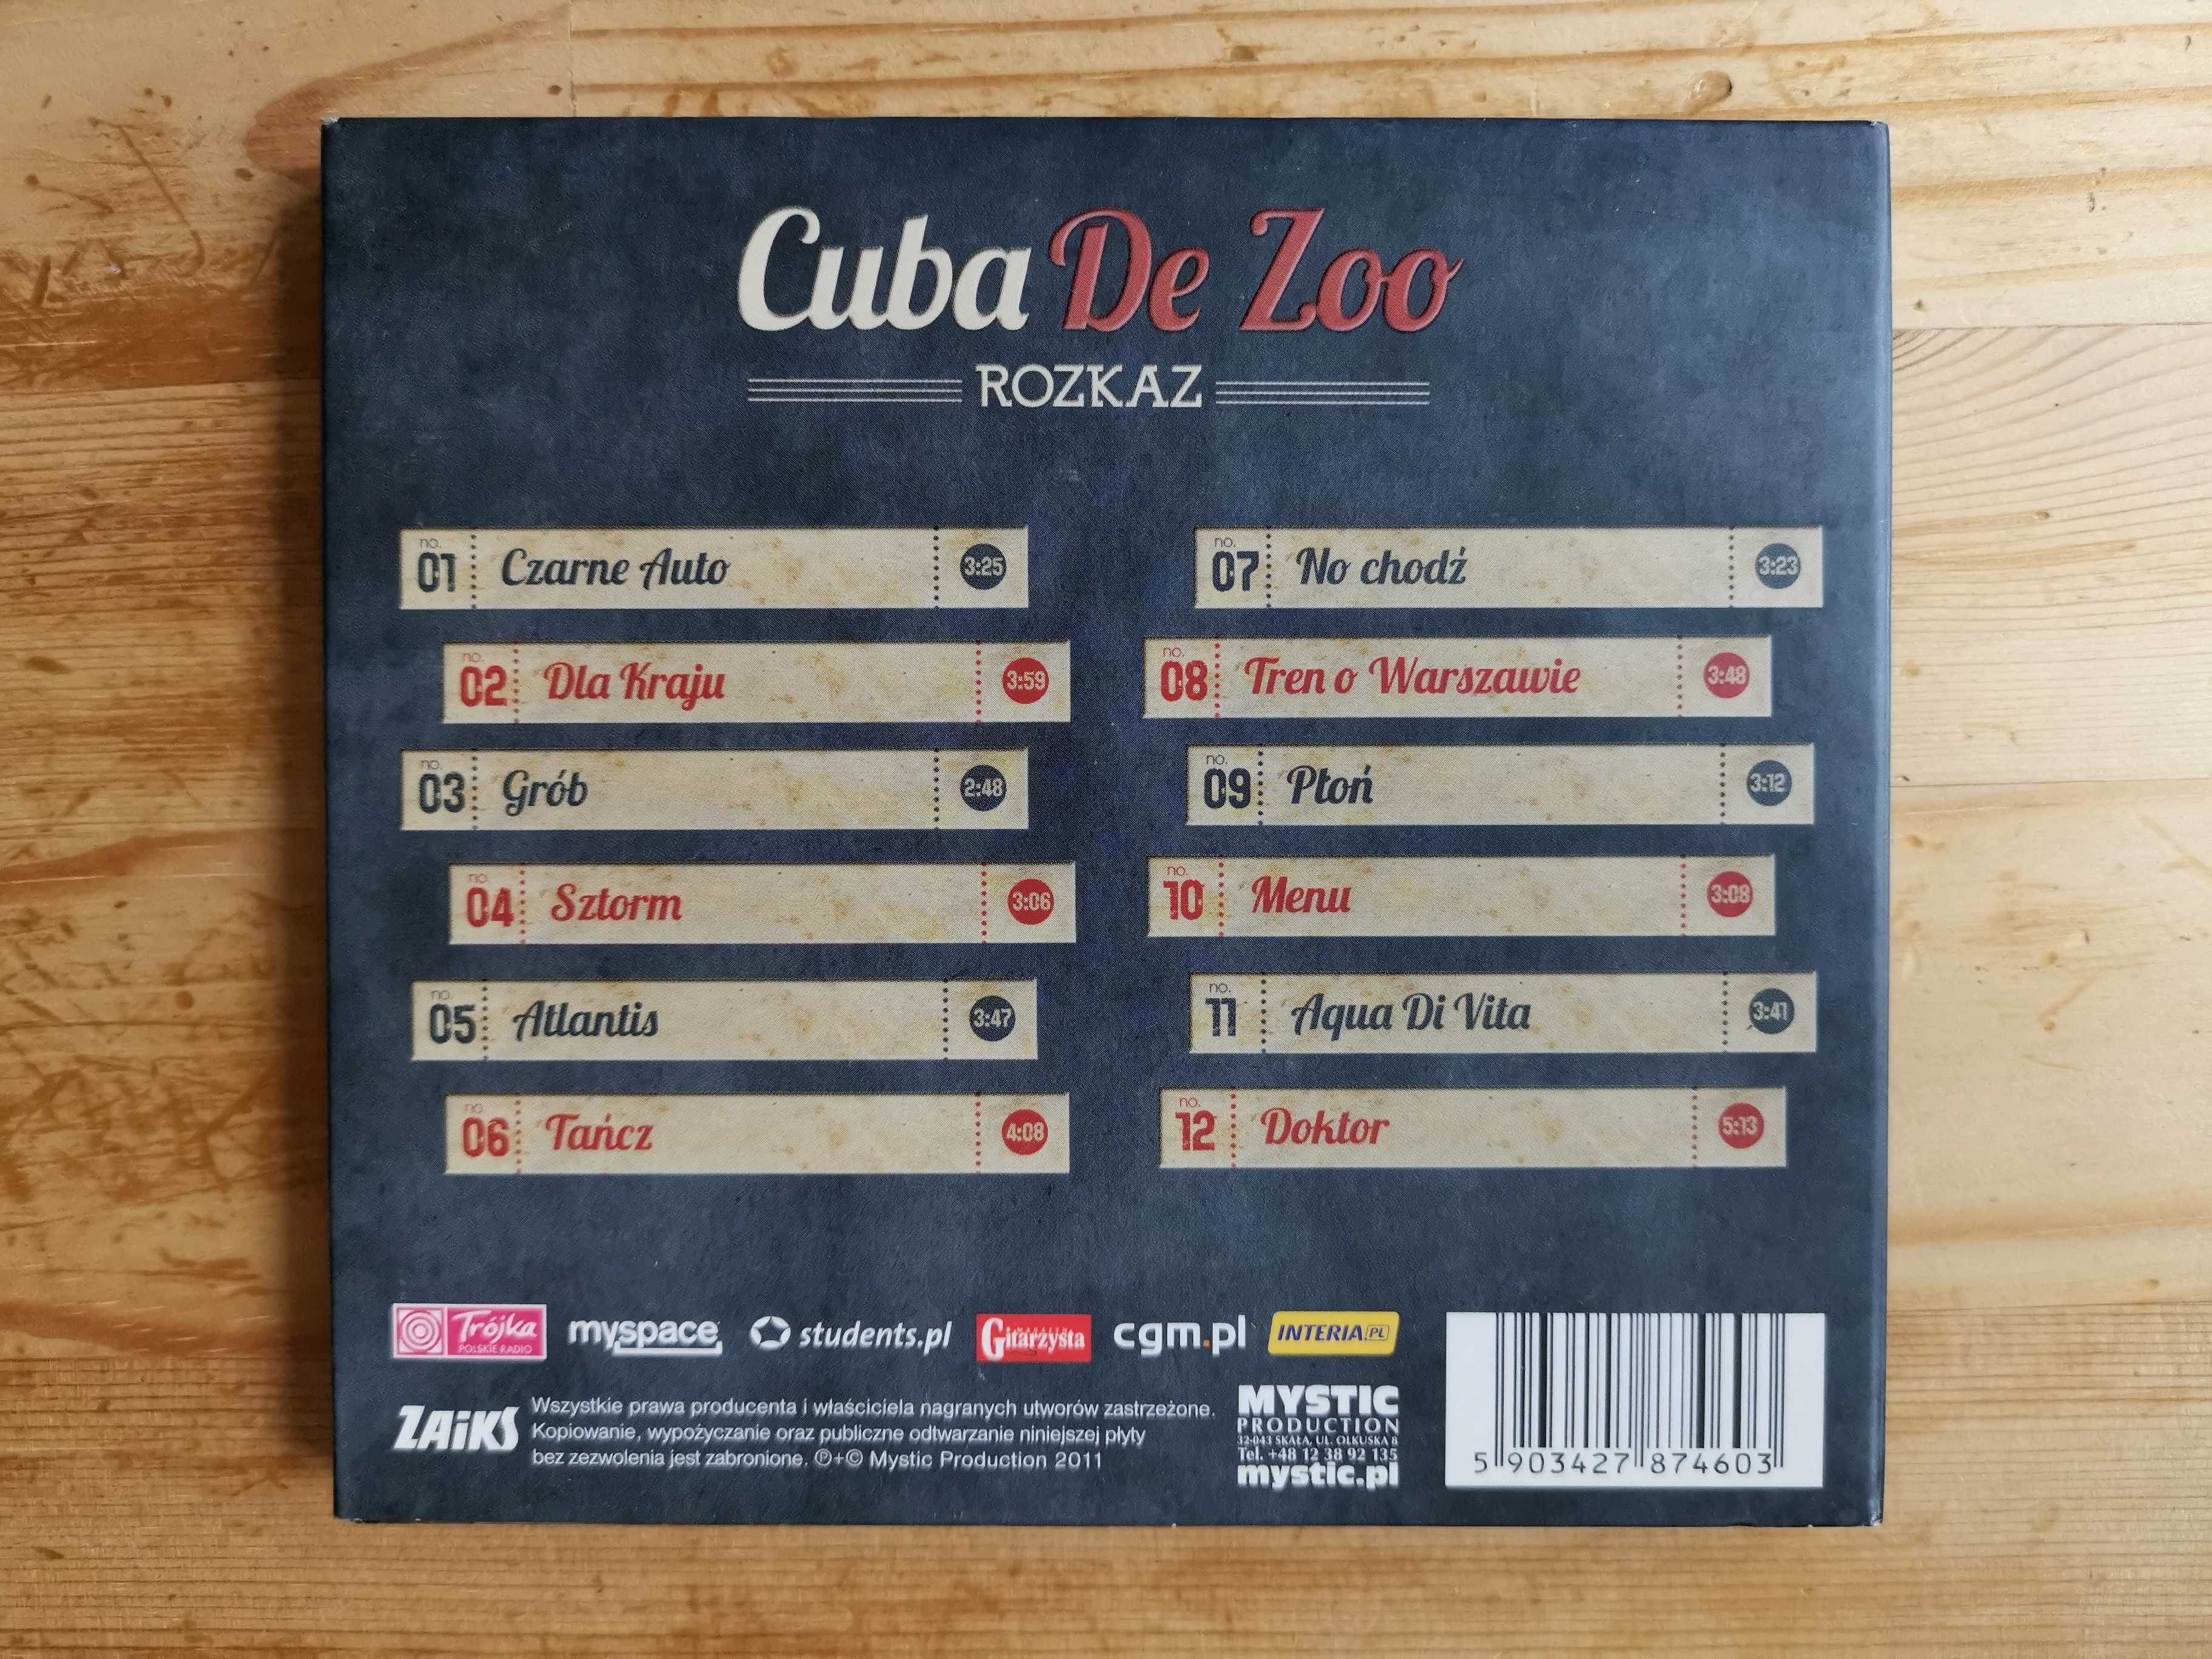 Płyta CD - Cuba de zoo " Rozkaz "